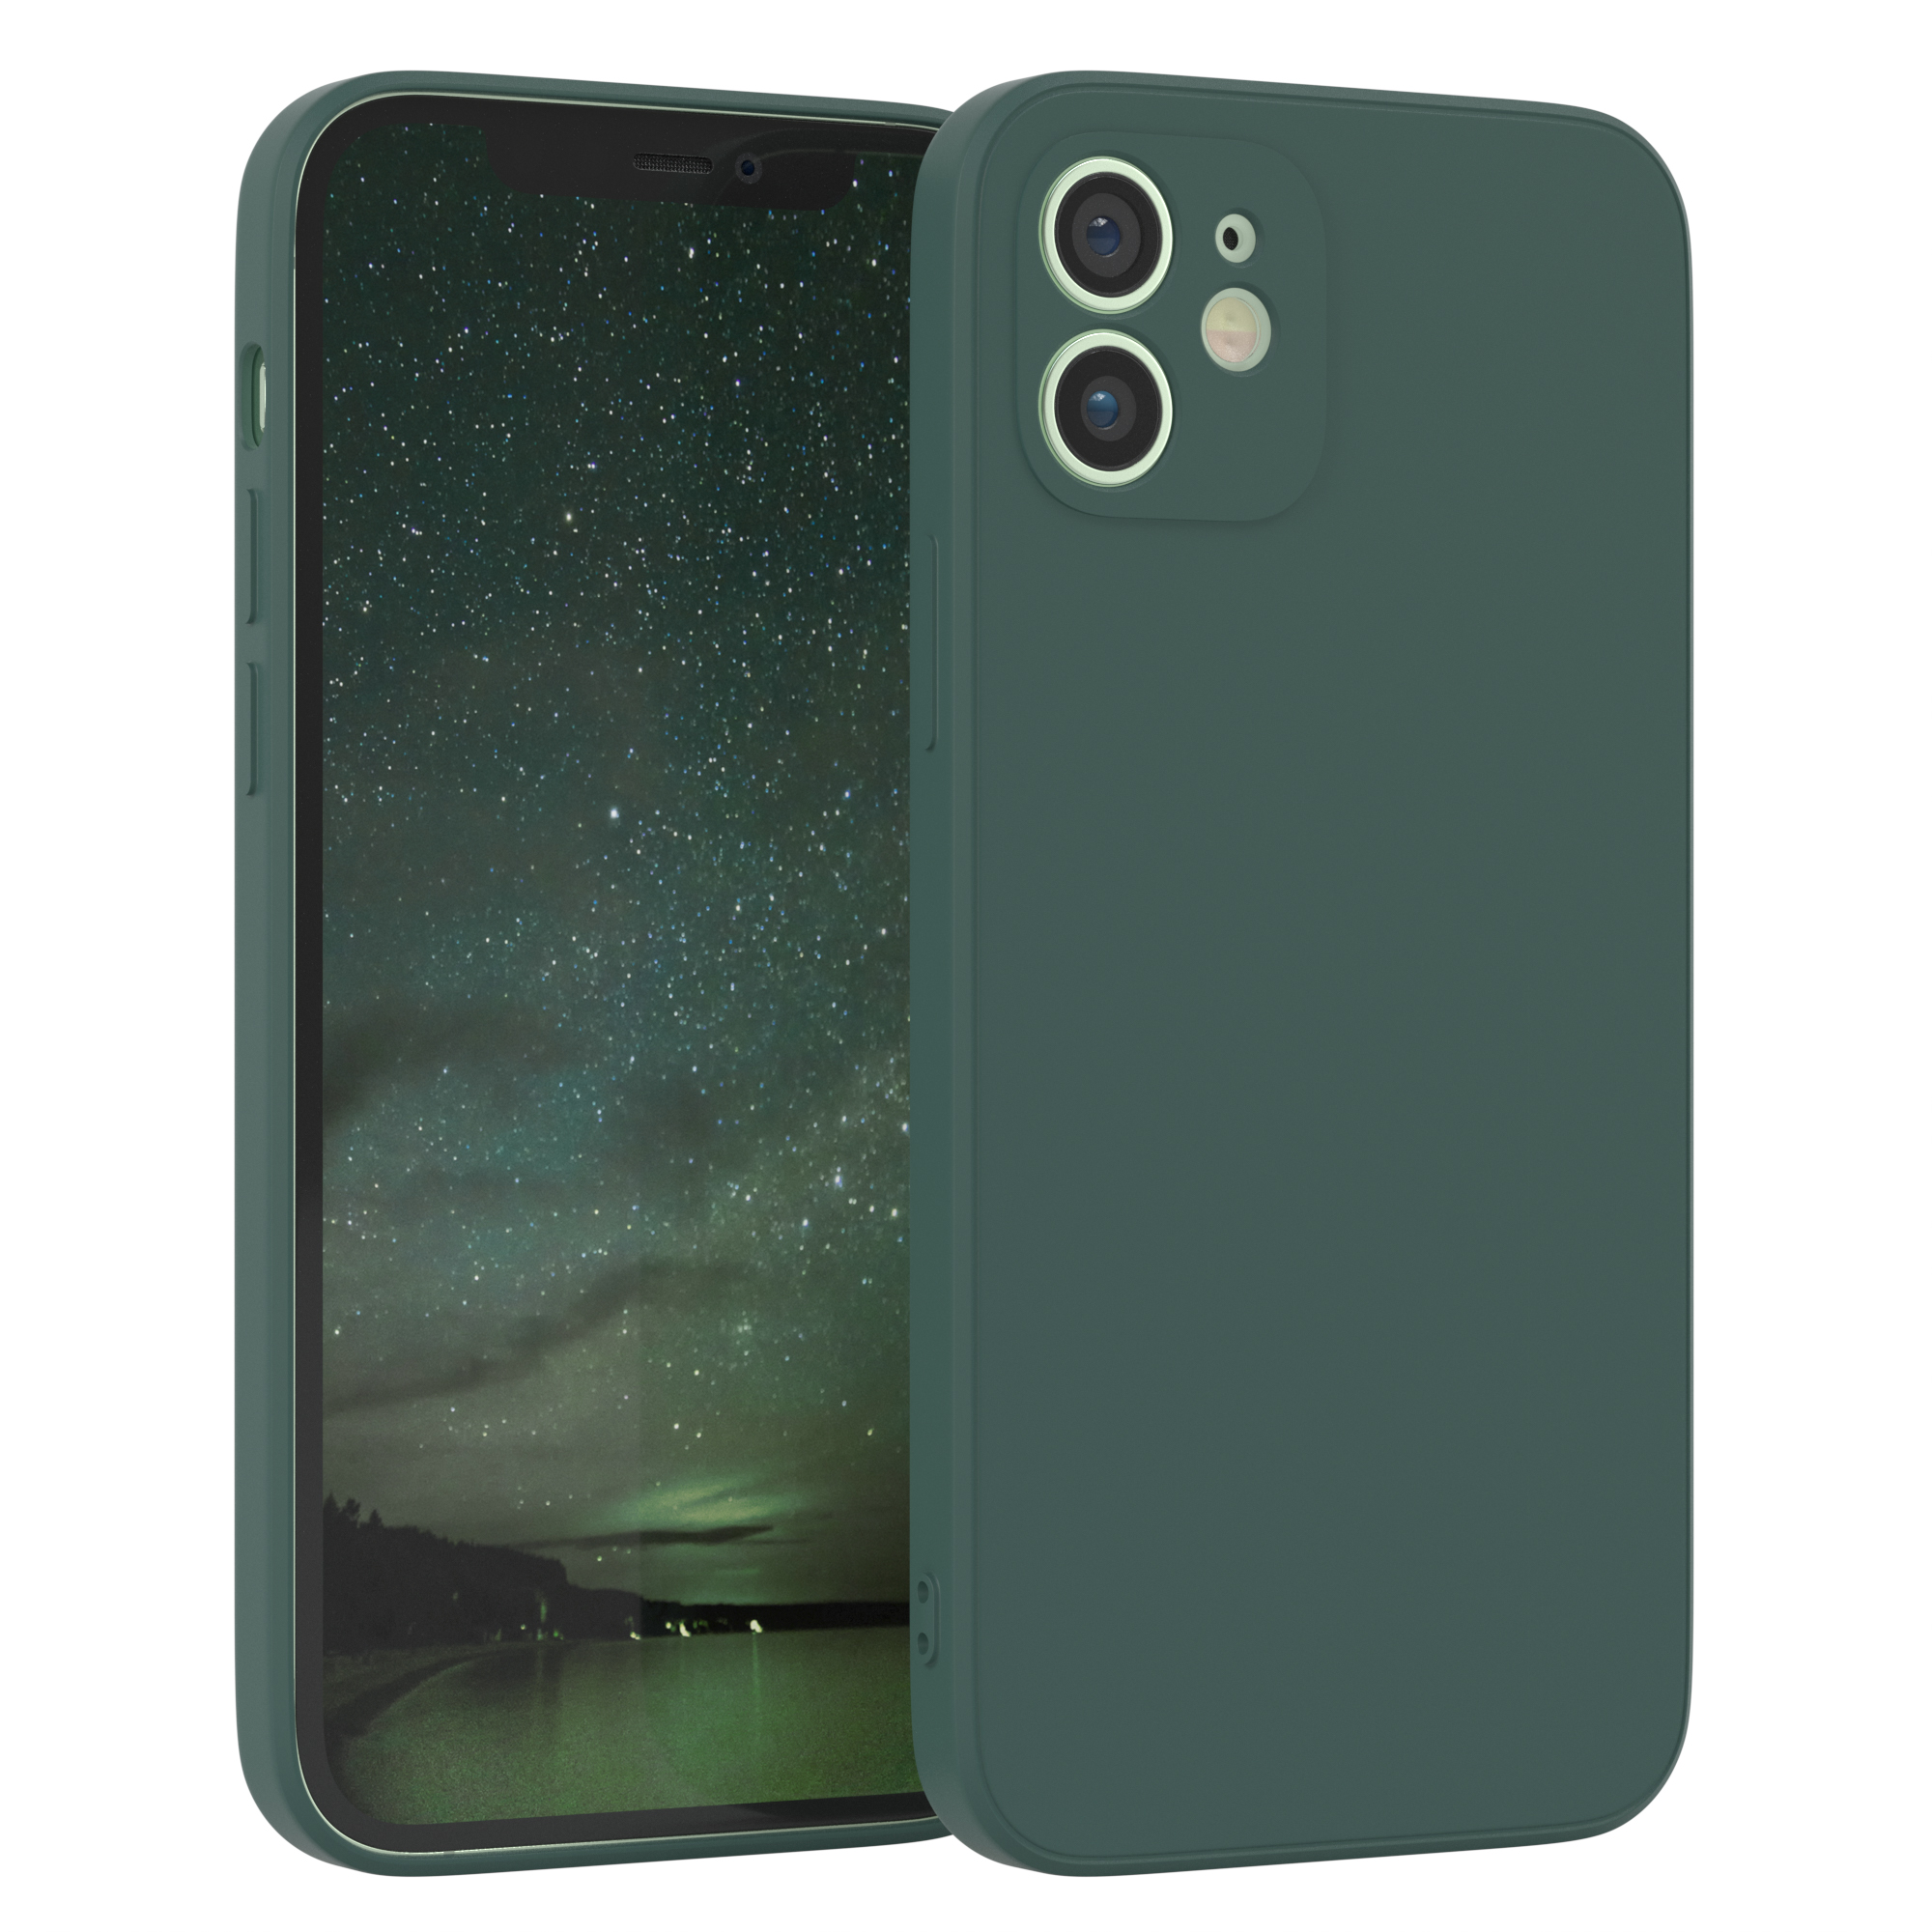 TPU CASE EAZY Grün Handycase / iPhone Apple, 12, Nachtgrün Backcover, Silikon Matt,